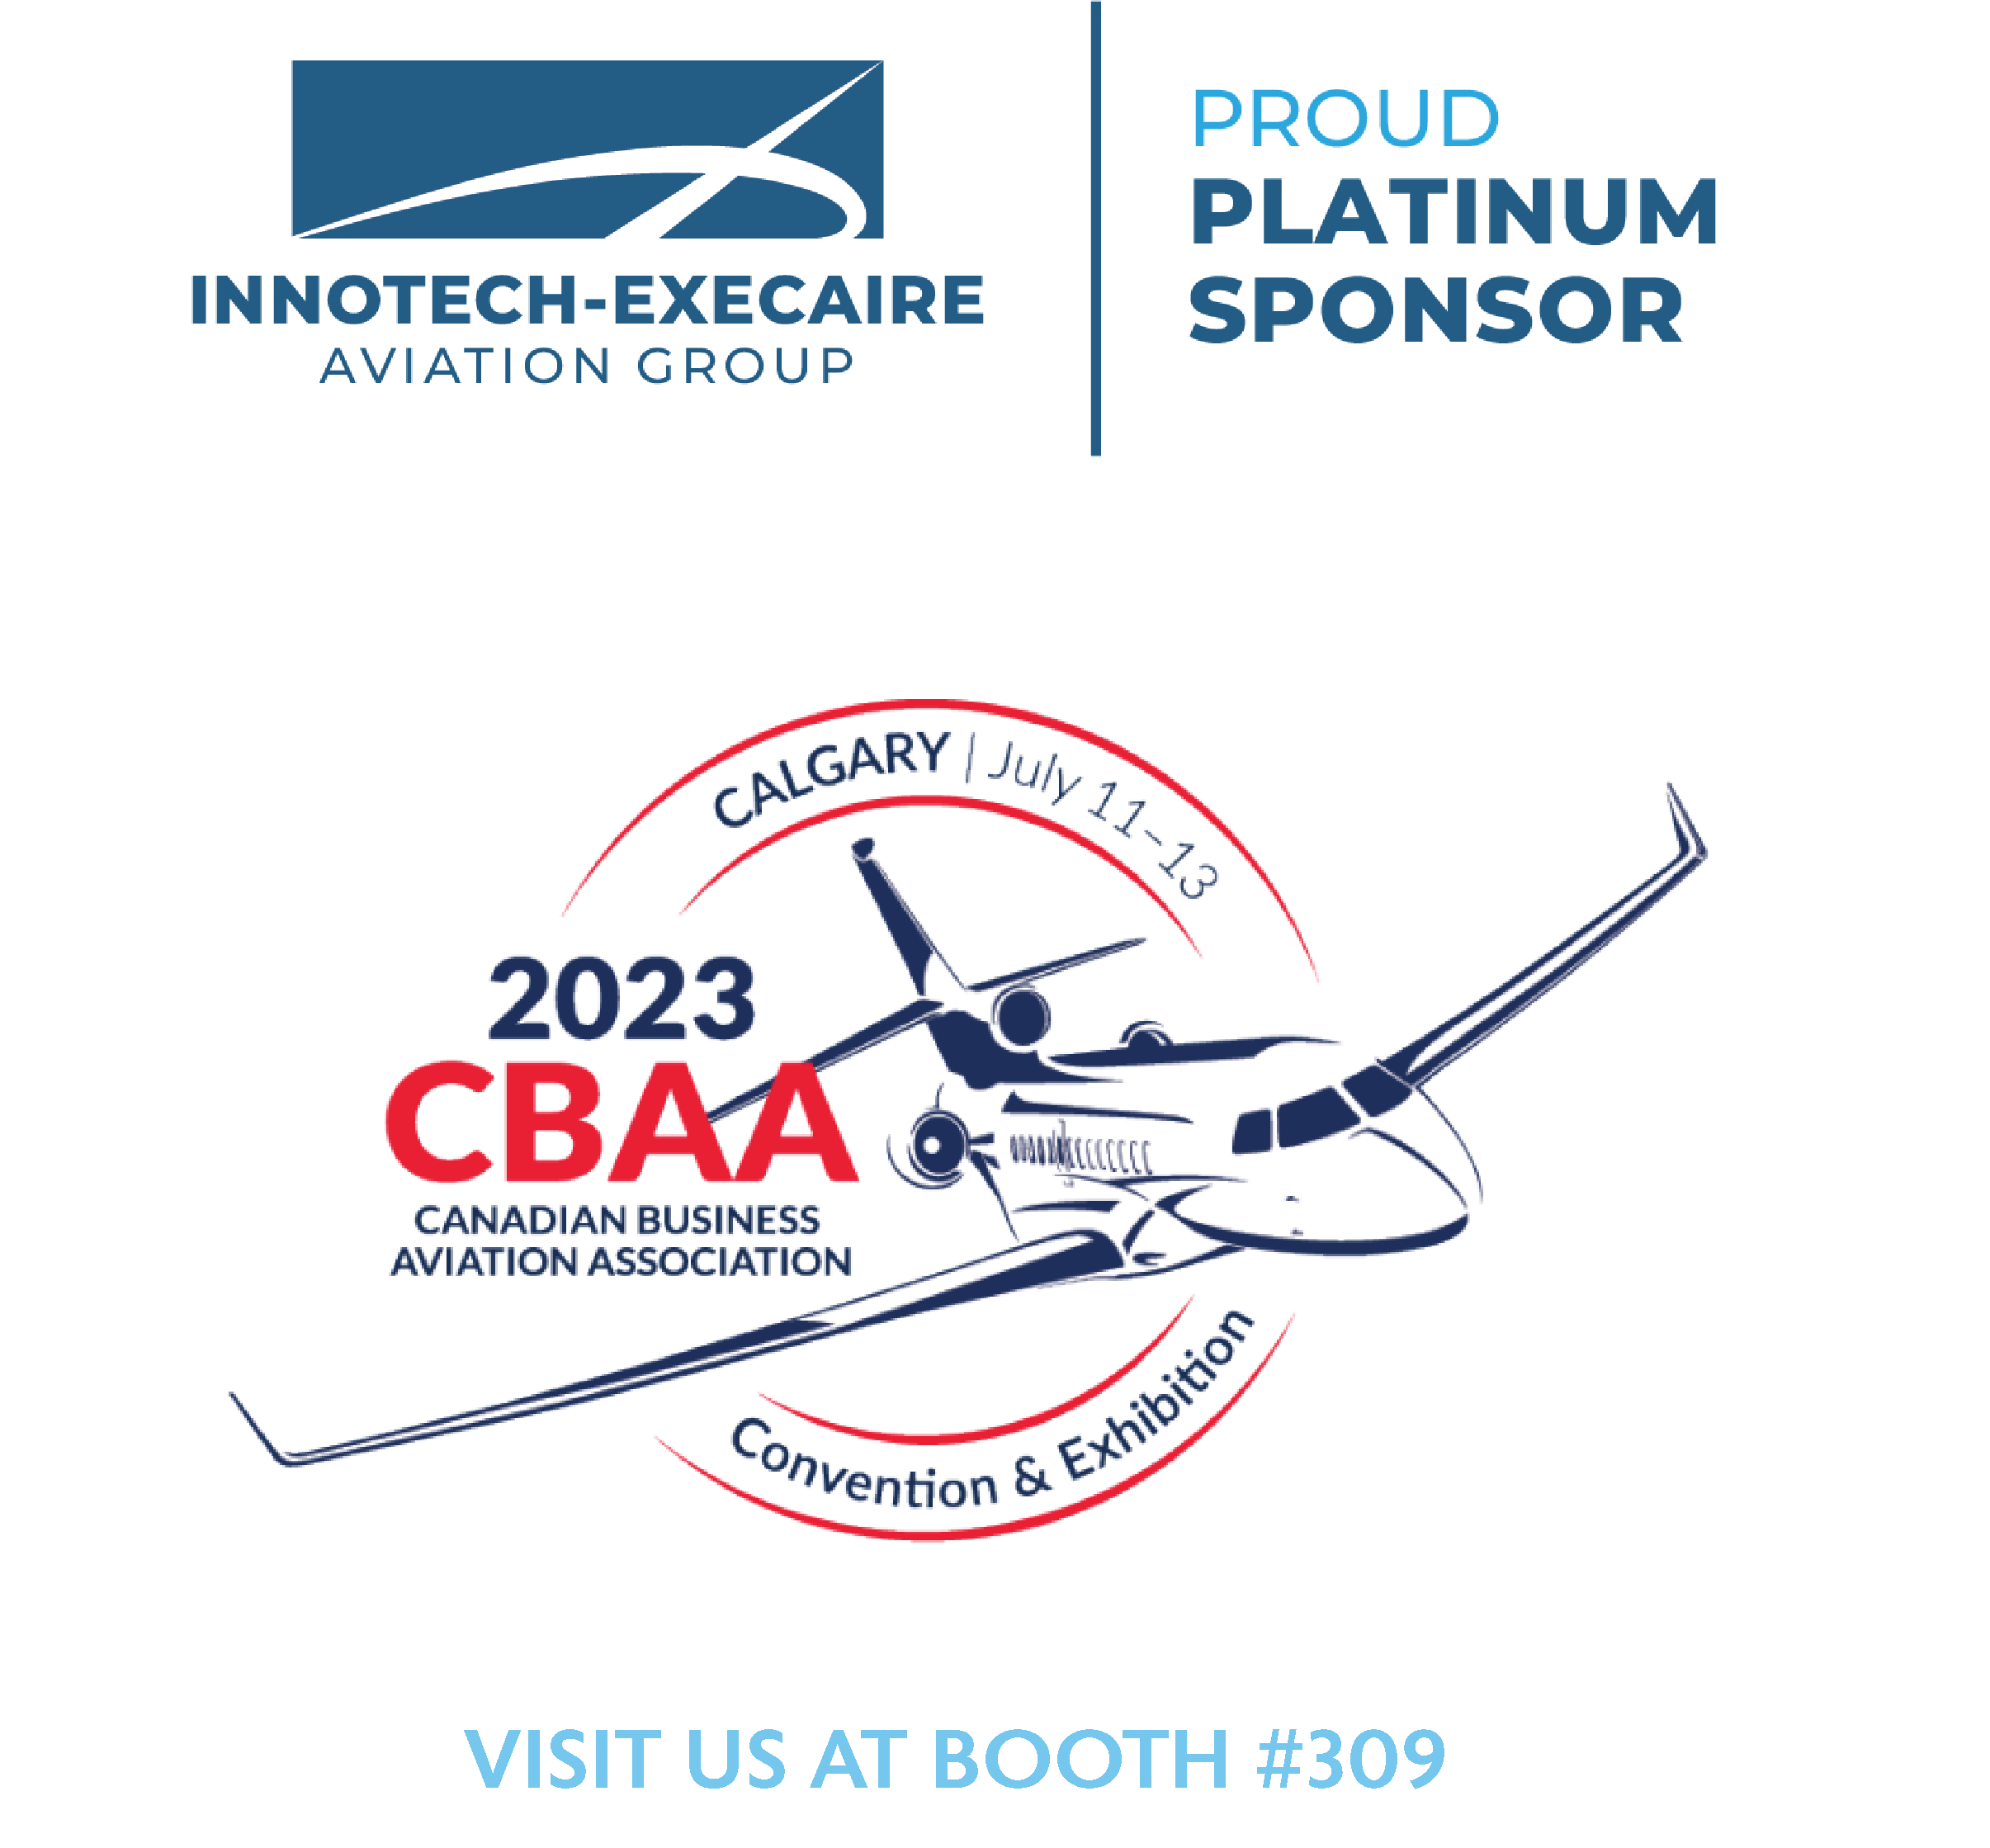 CBAA 2023 Innotech-Execaire Aviation Group